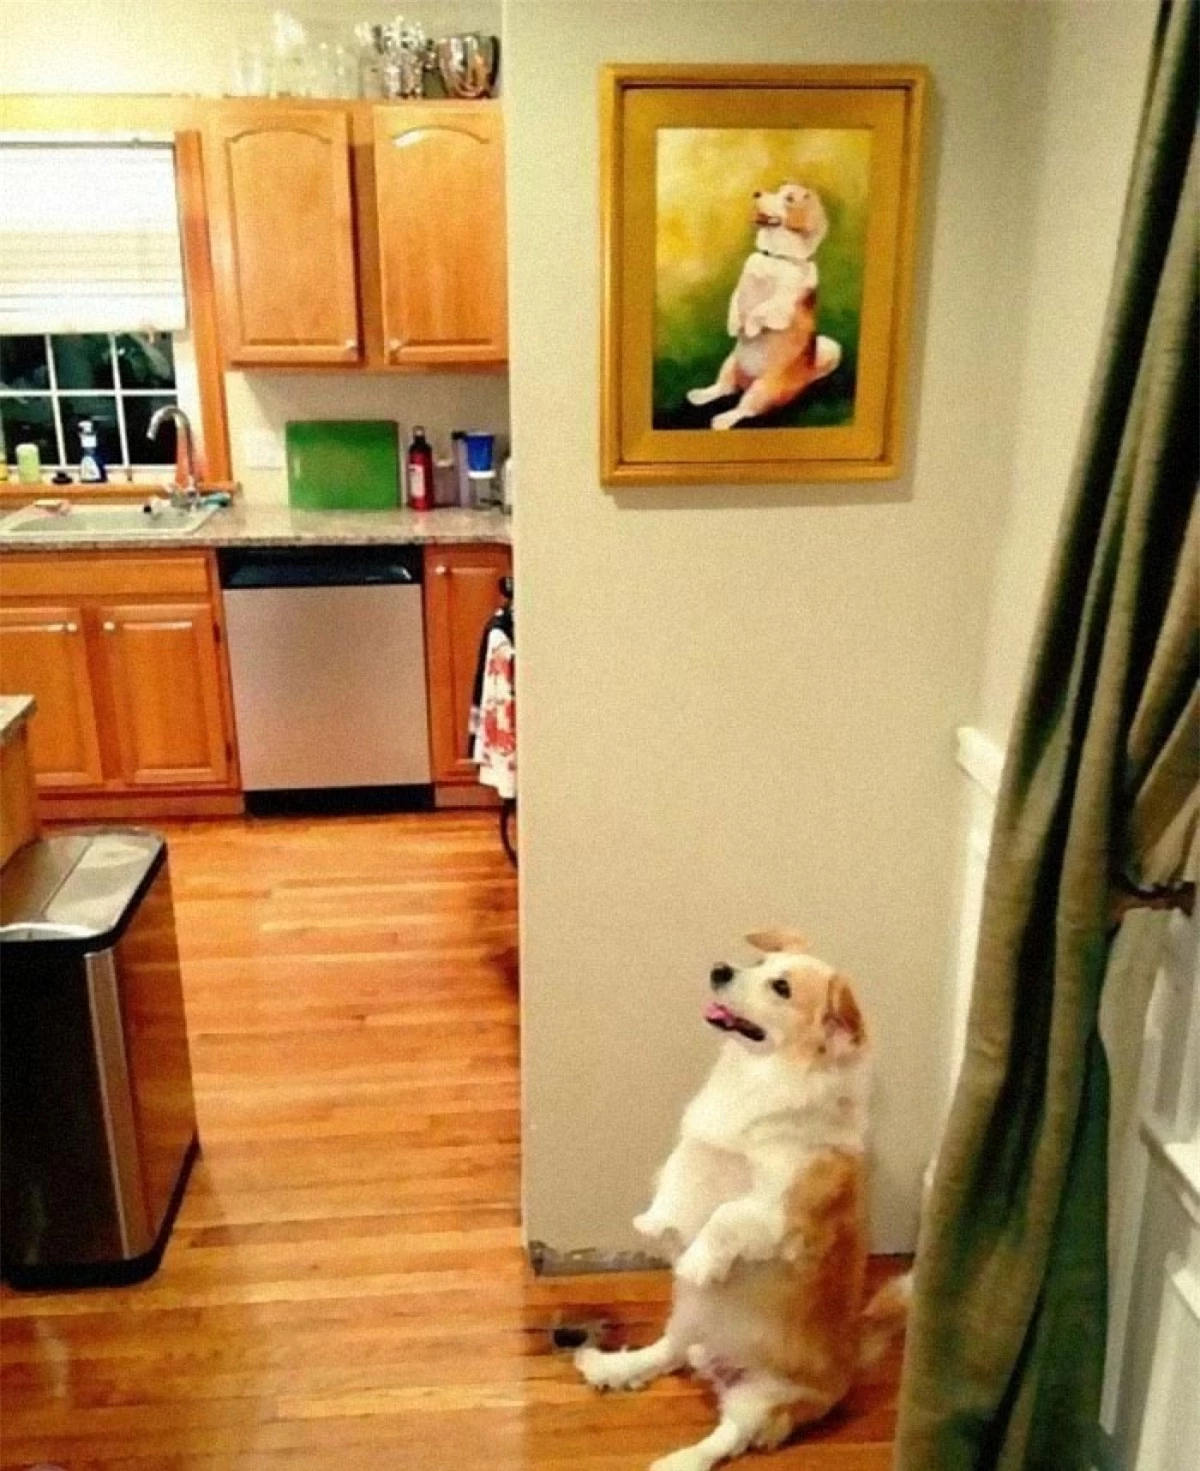 Biểu cảm và hành động của chú chó giống hệt bức ảnh.